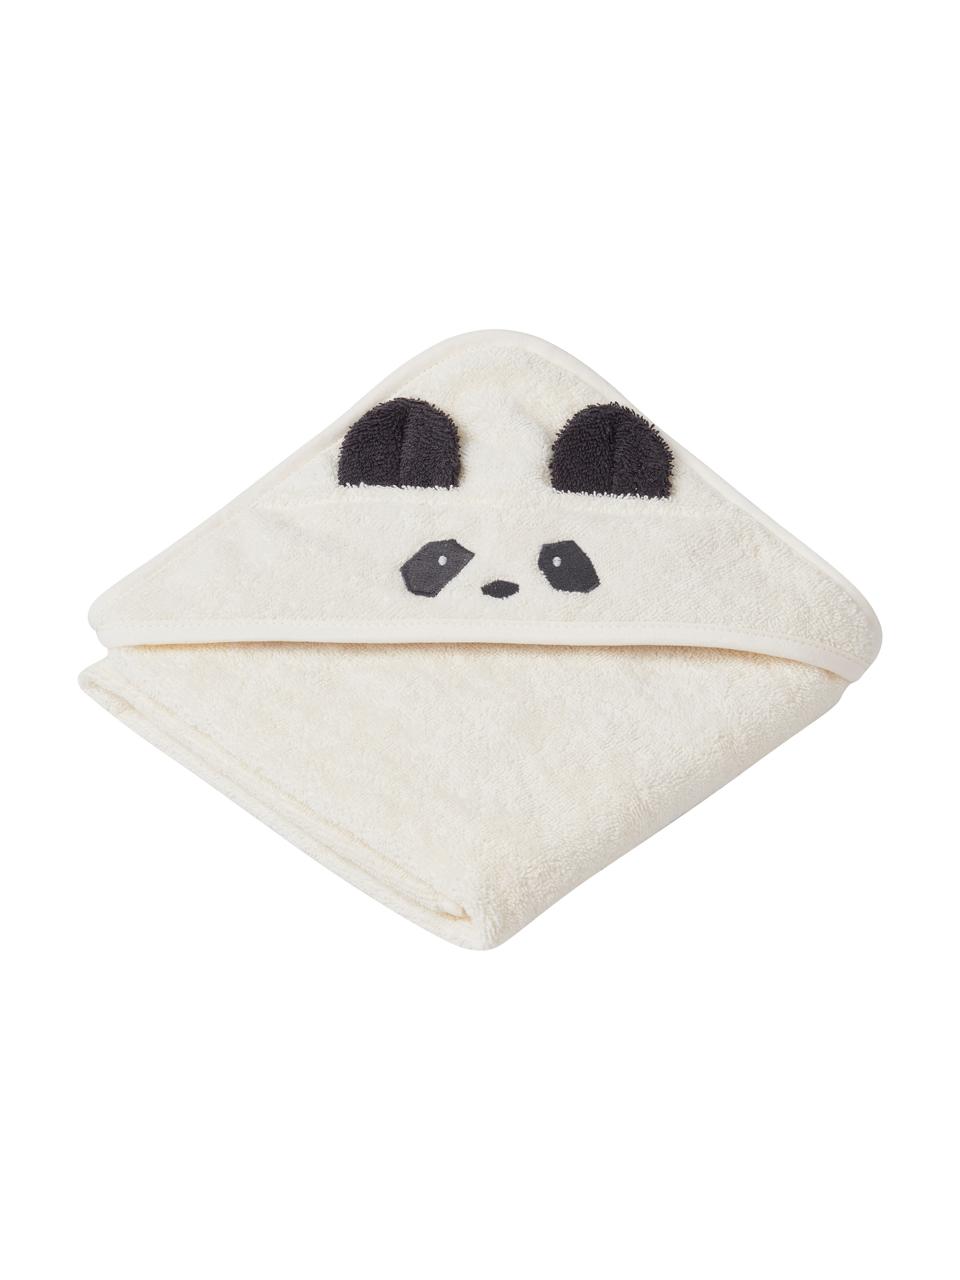 Serviette de toilette bébé coton bio Panda, 100% coton biologique (coton éponge), certifié GOTS, Blanc, noir, larg. 70 x long. 70 cm